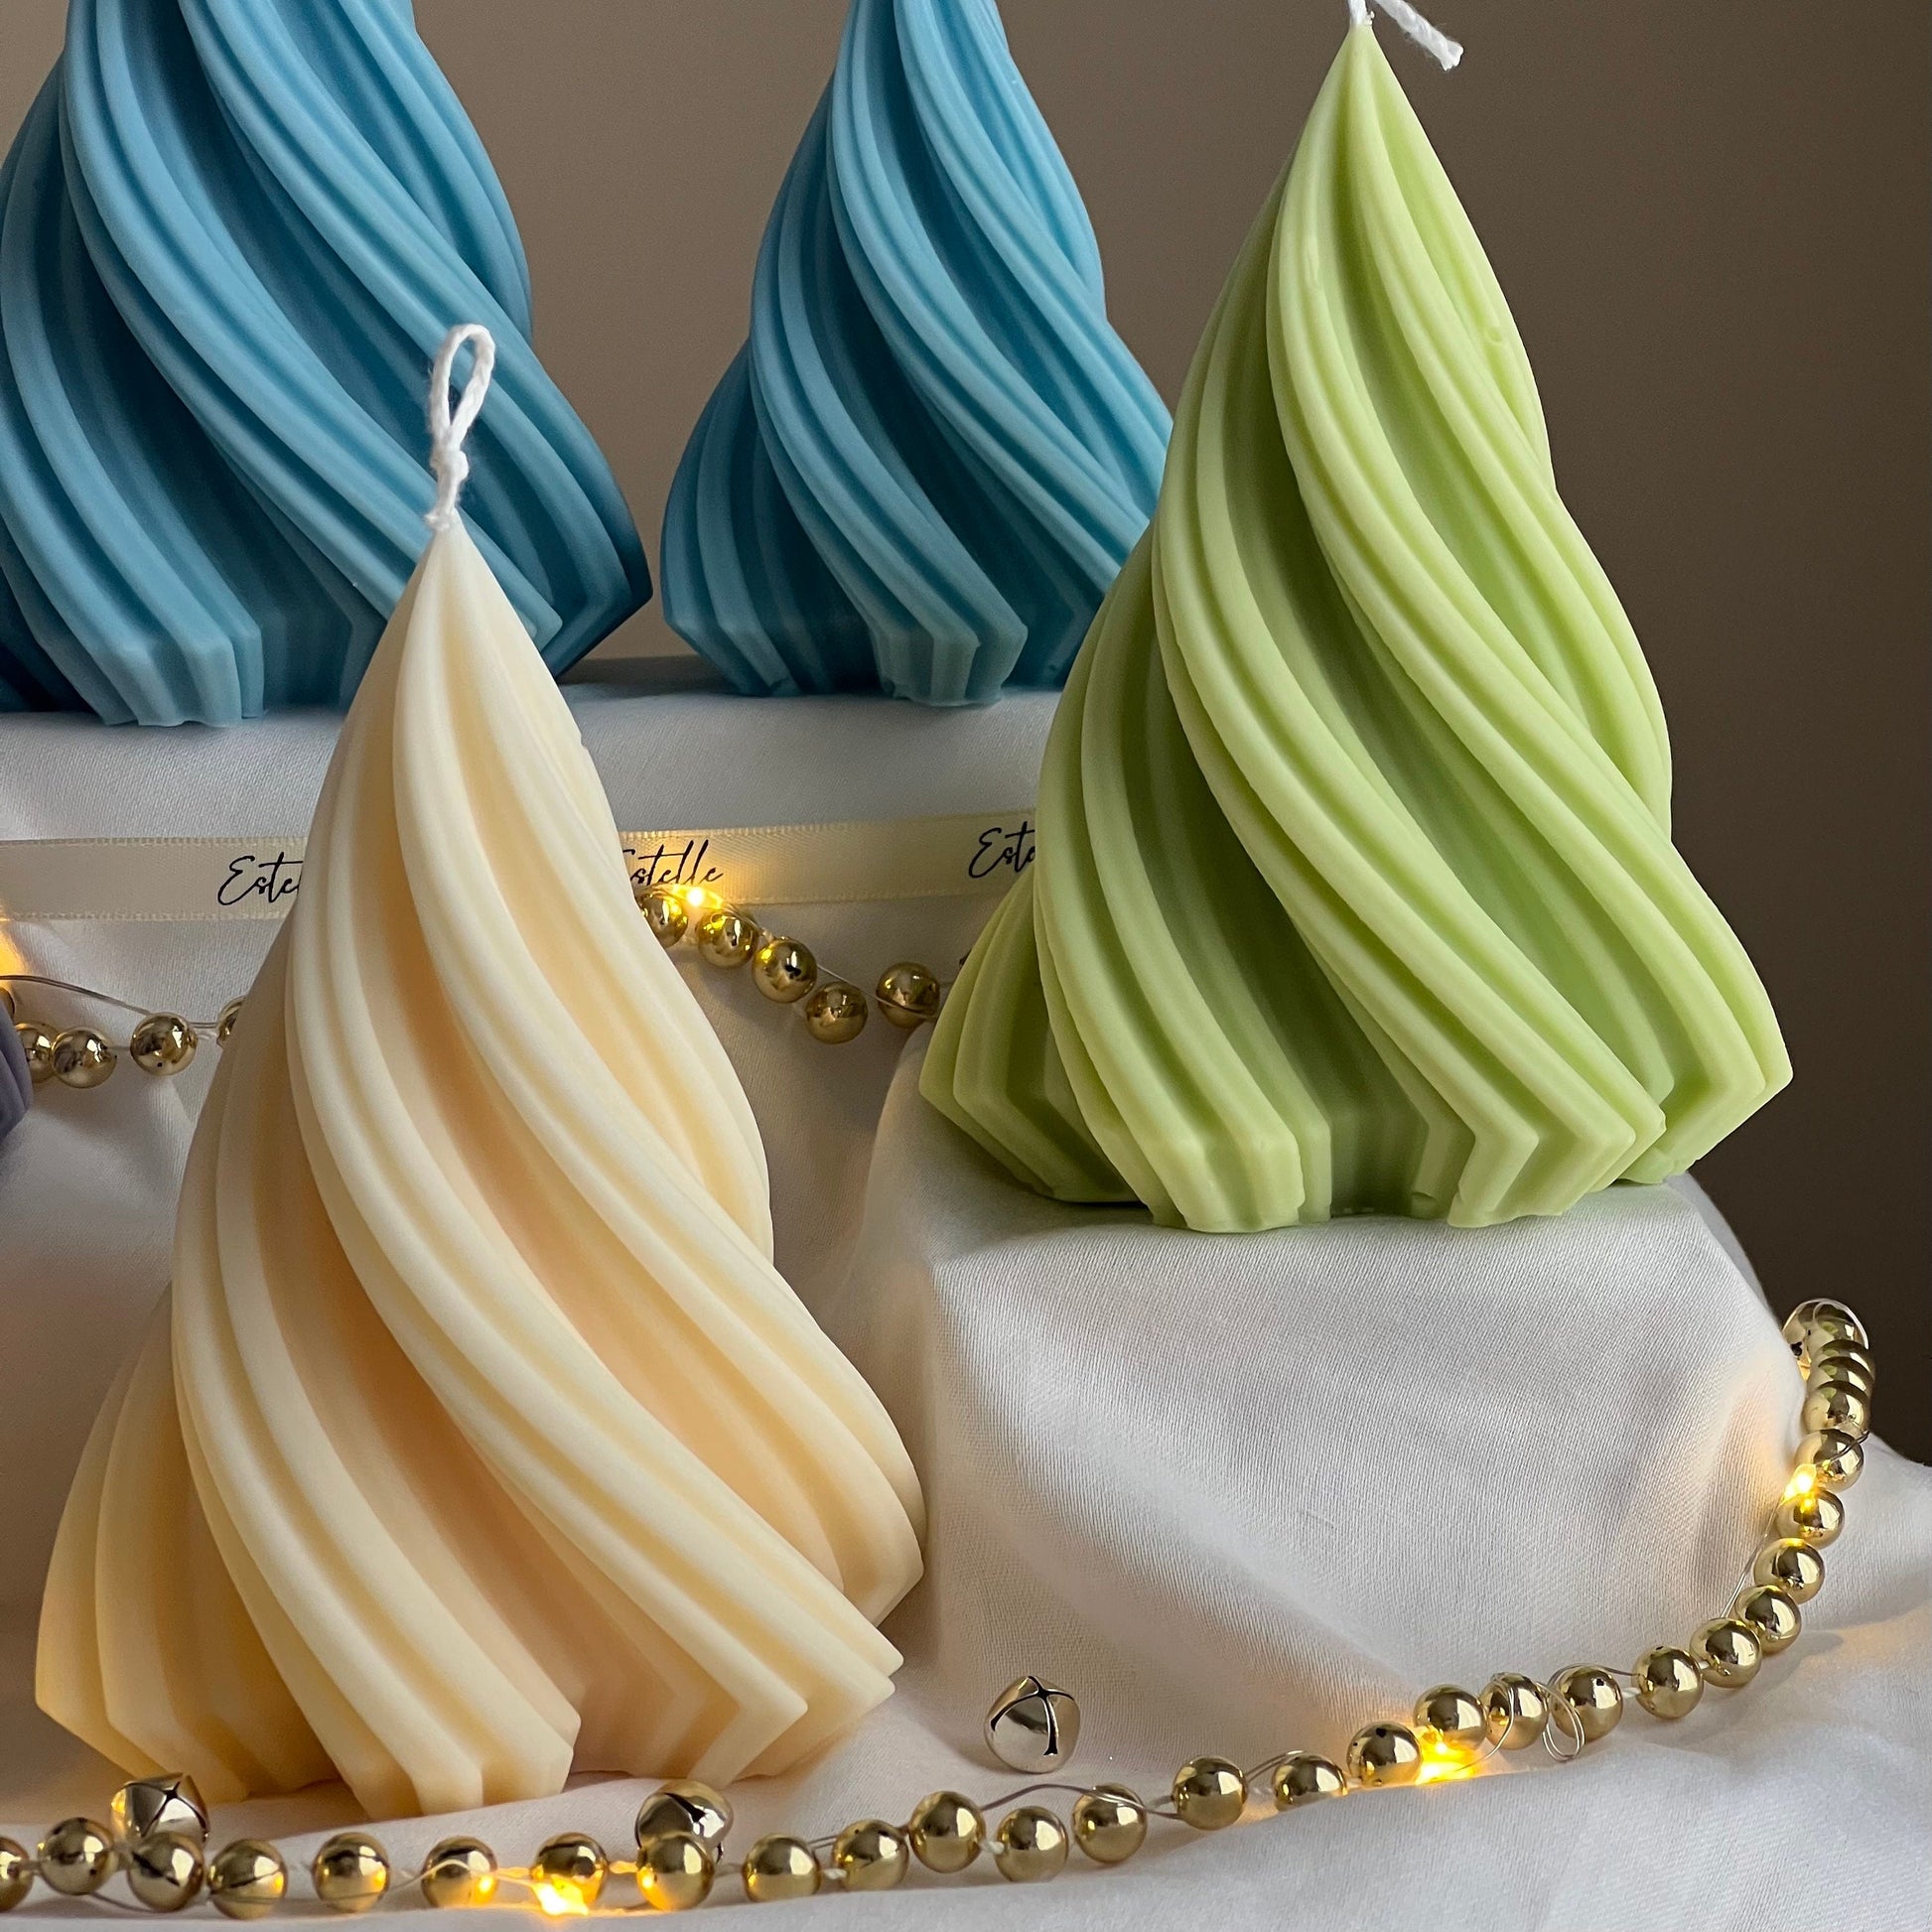 Swirl Ribbed Christmas Tree Candle |Handmade Gift| Cute Candle| Christmas Decor| Hand Poured Candle| Aesthetic Home Decor|Christmas Gift